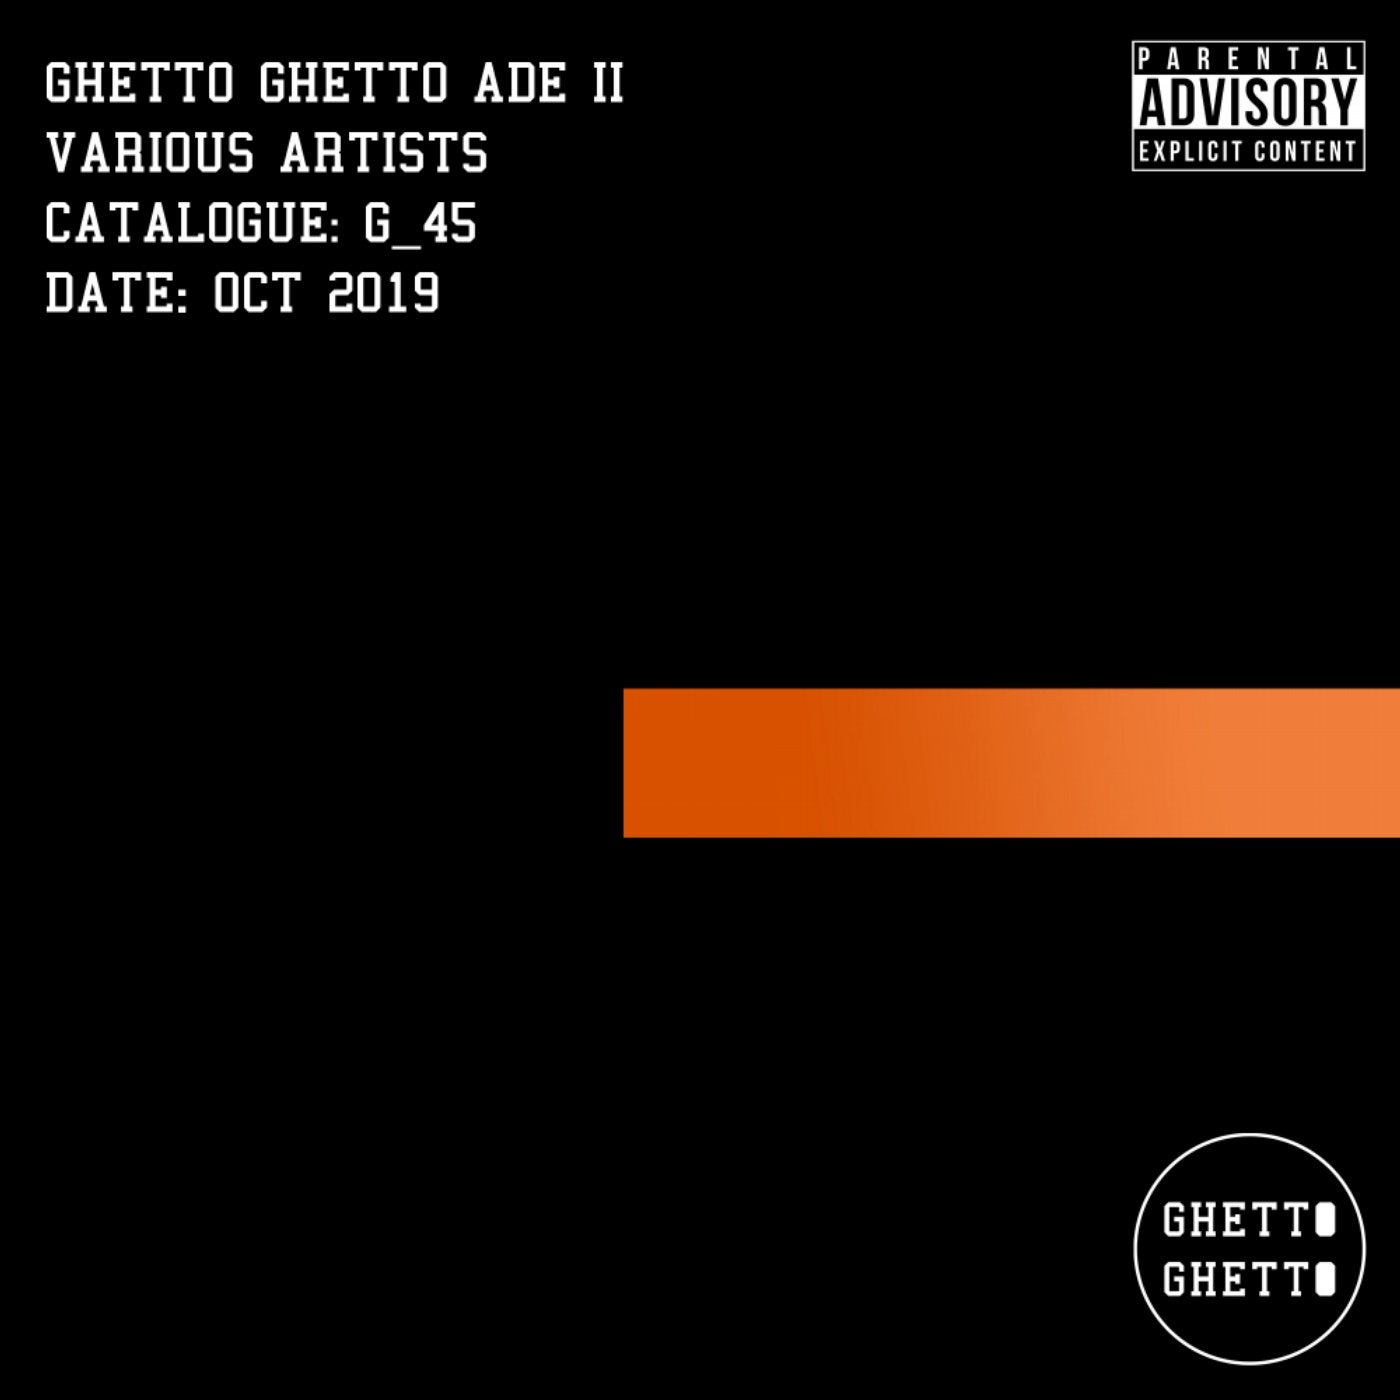 Ghetto Ghetto ADE II